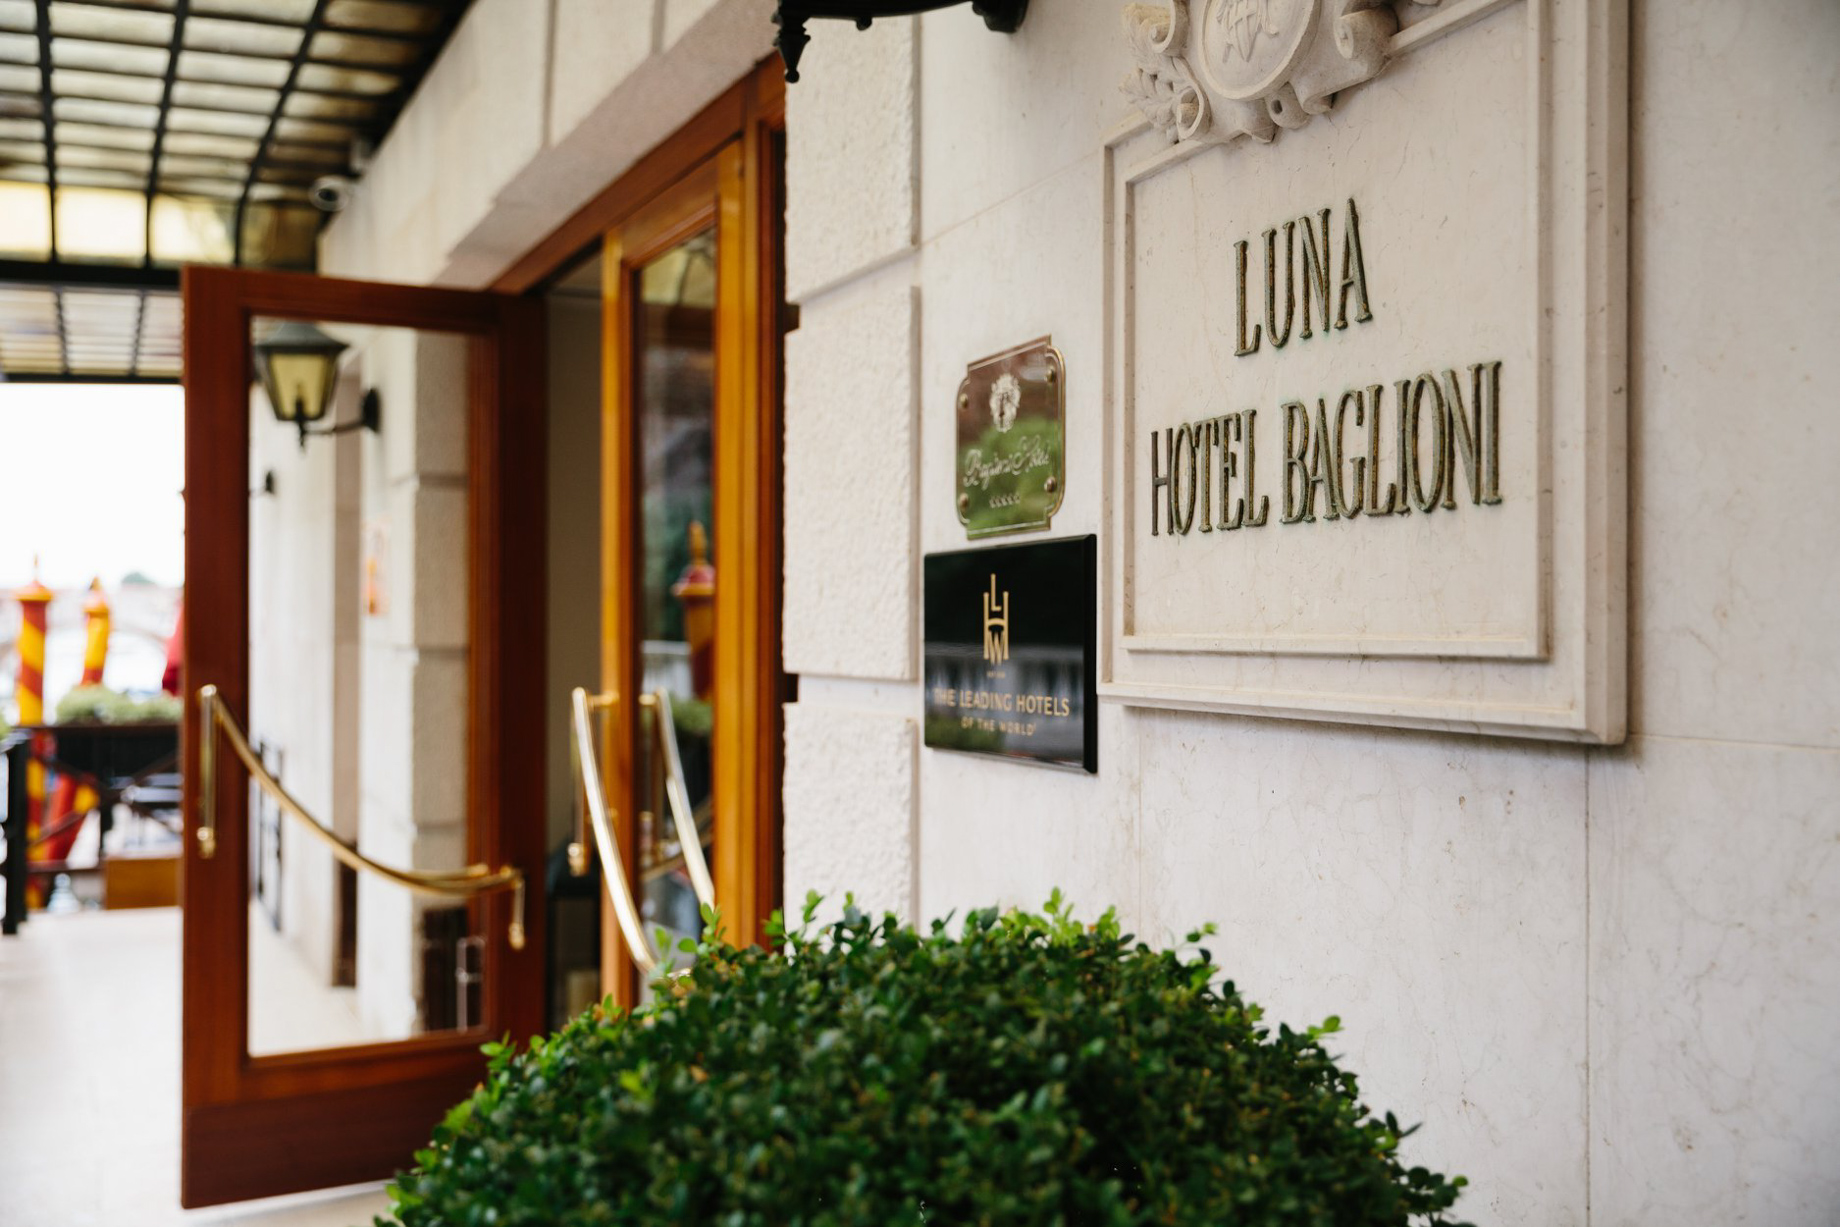 Baglioni Hotel Luna, Venezia – Venice, Italy – Front Entrance